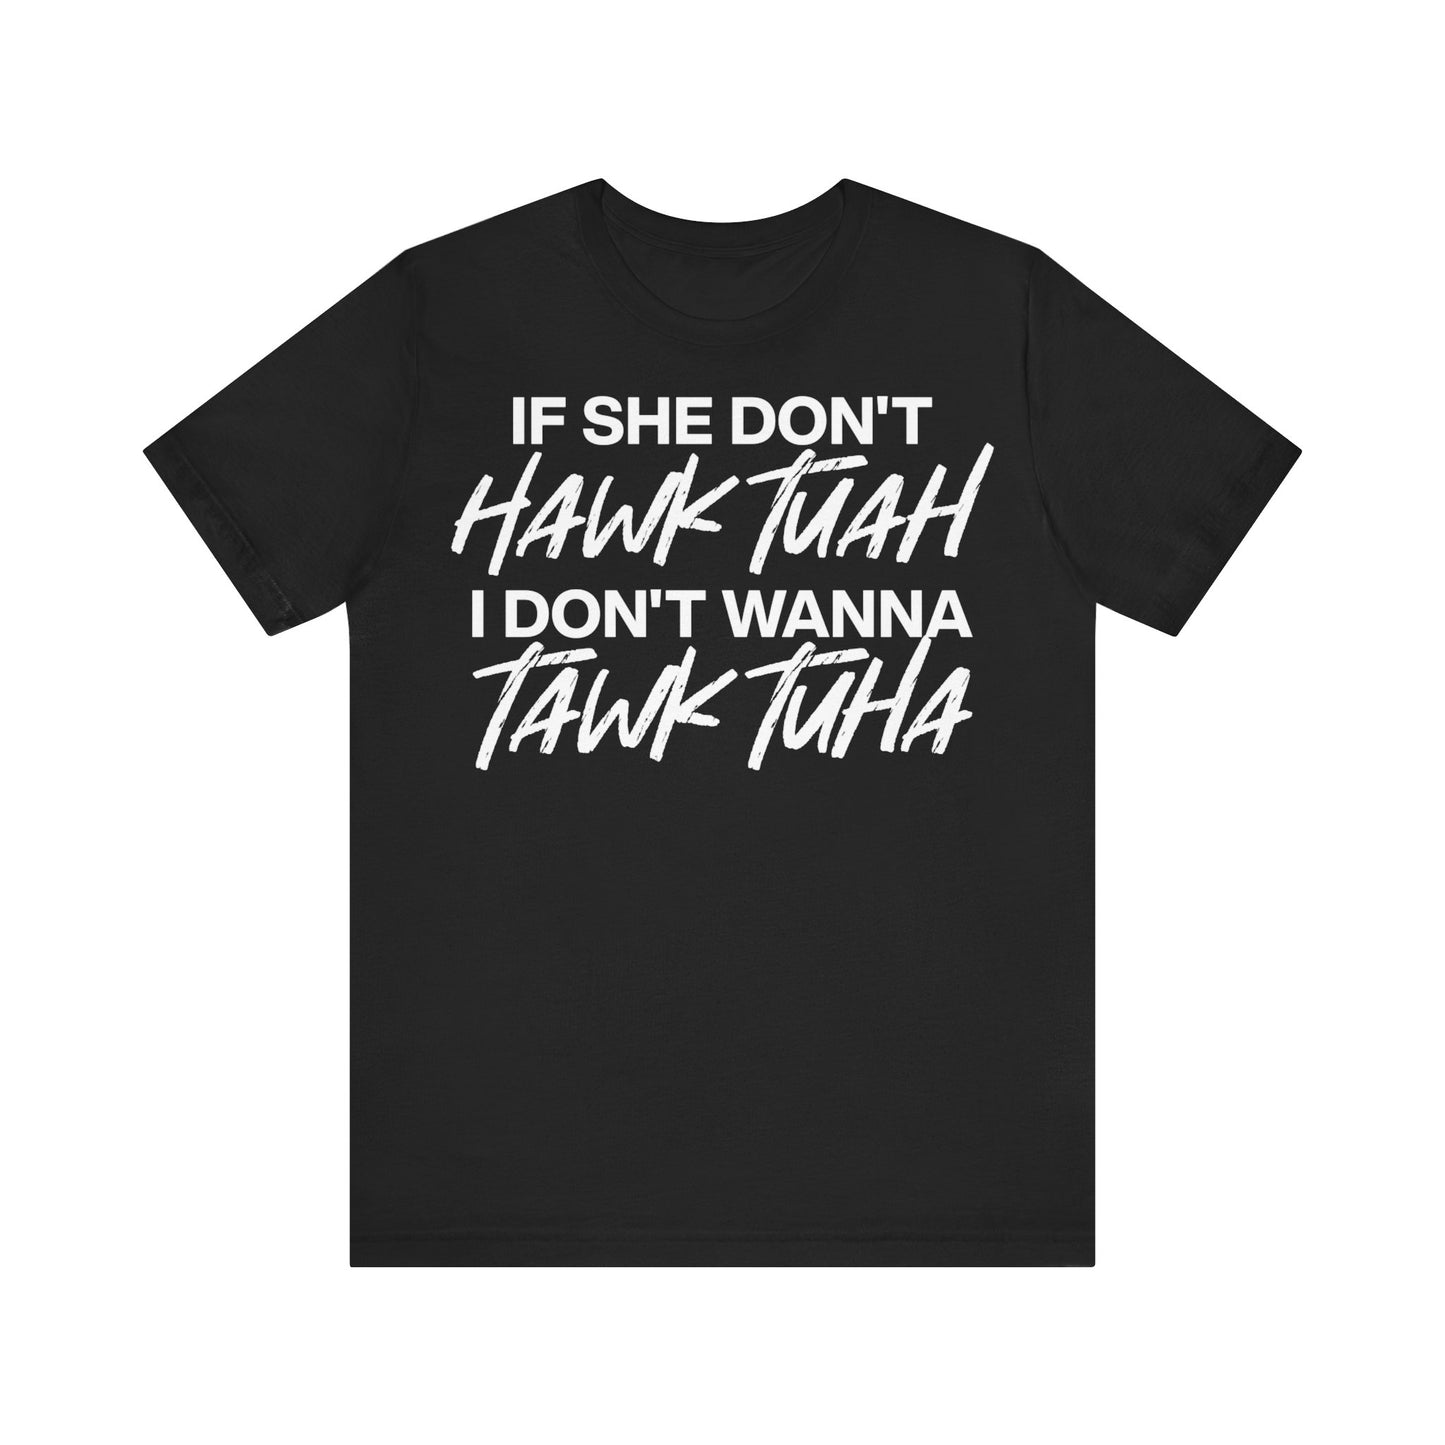 If She Don't Hawk Tuah Shirt I Don't Wanna Tawk Tuha